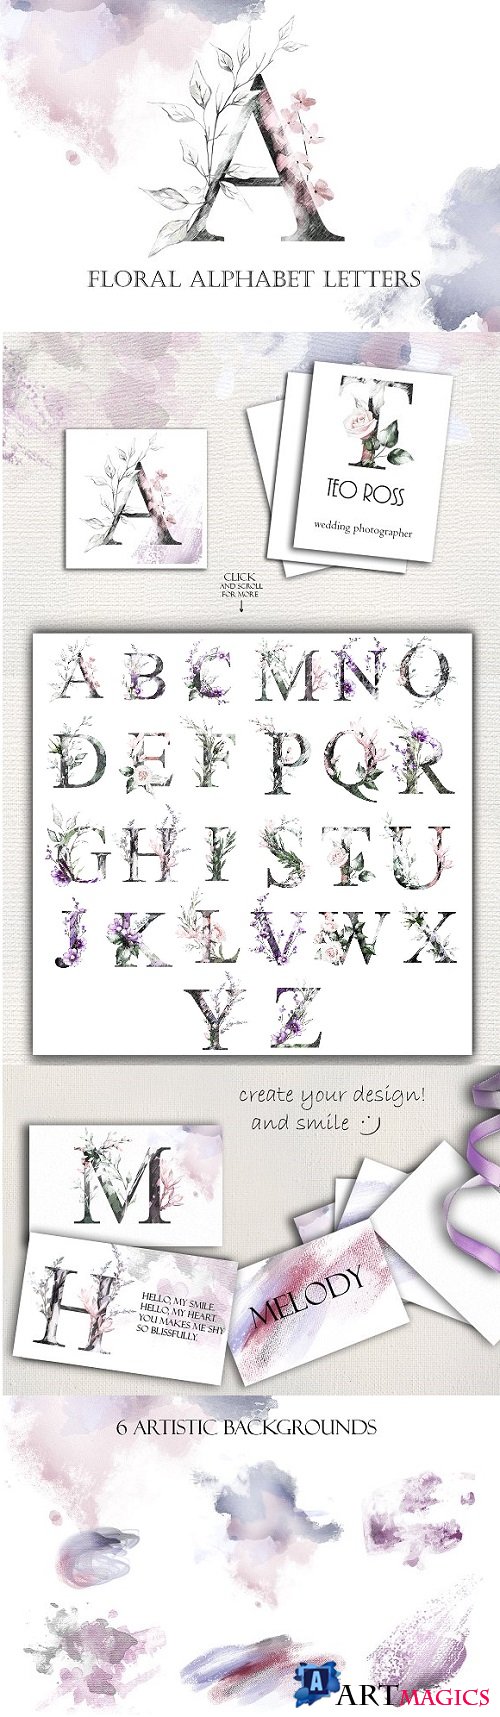 Floral Alphabet Letters - 2200289